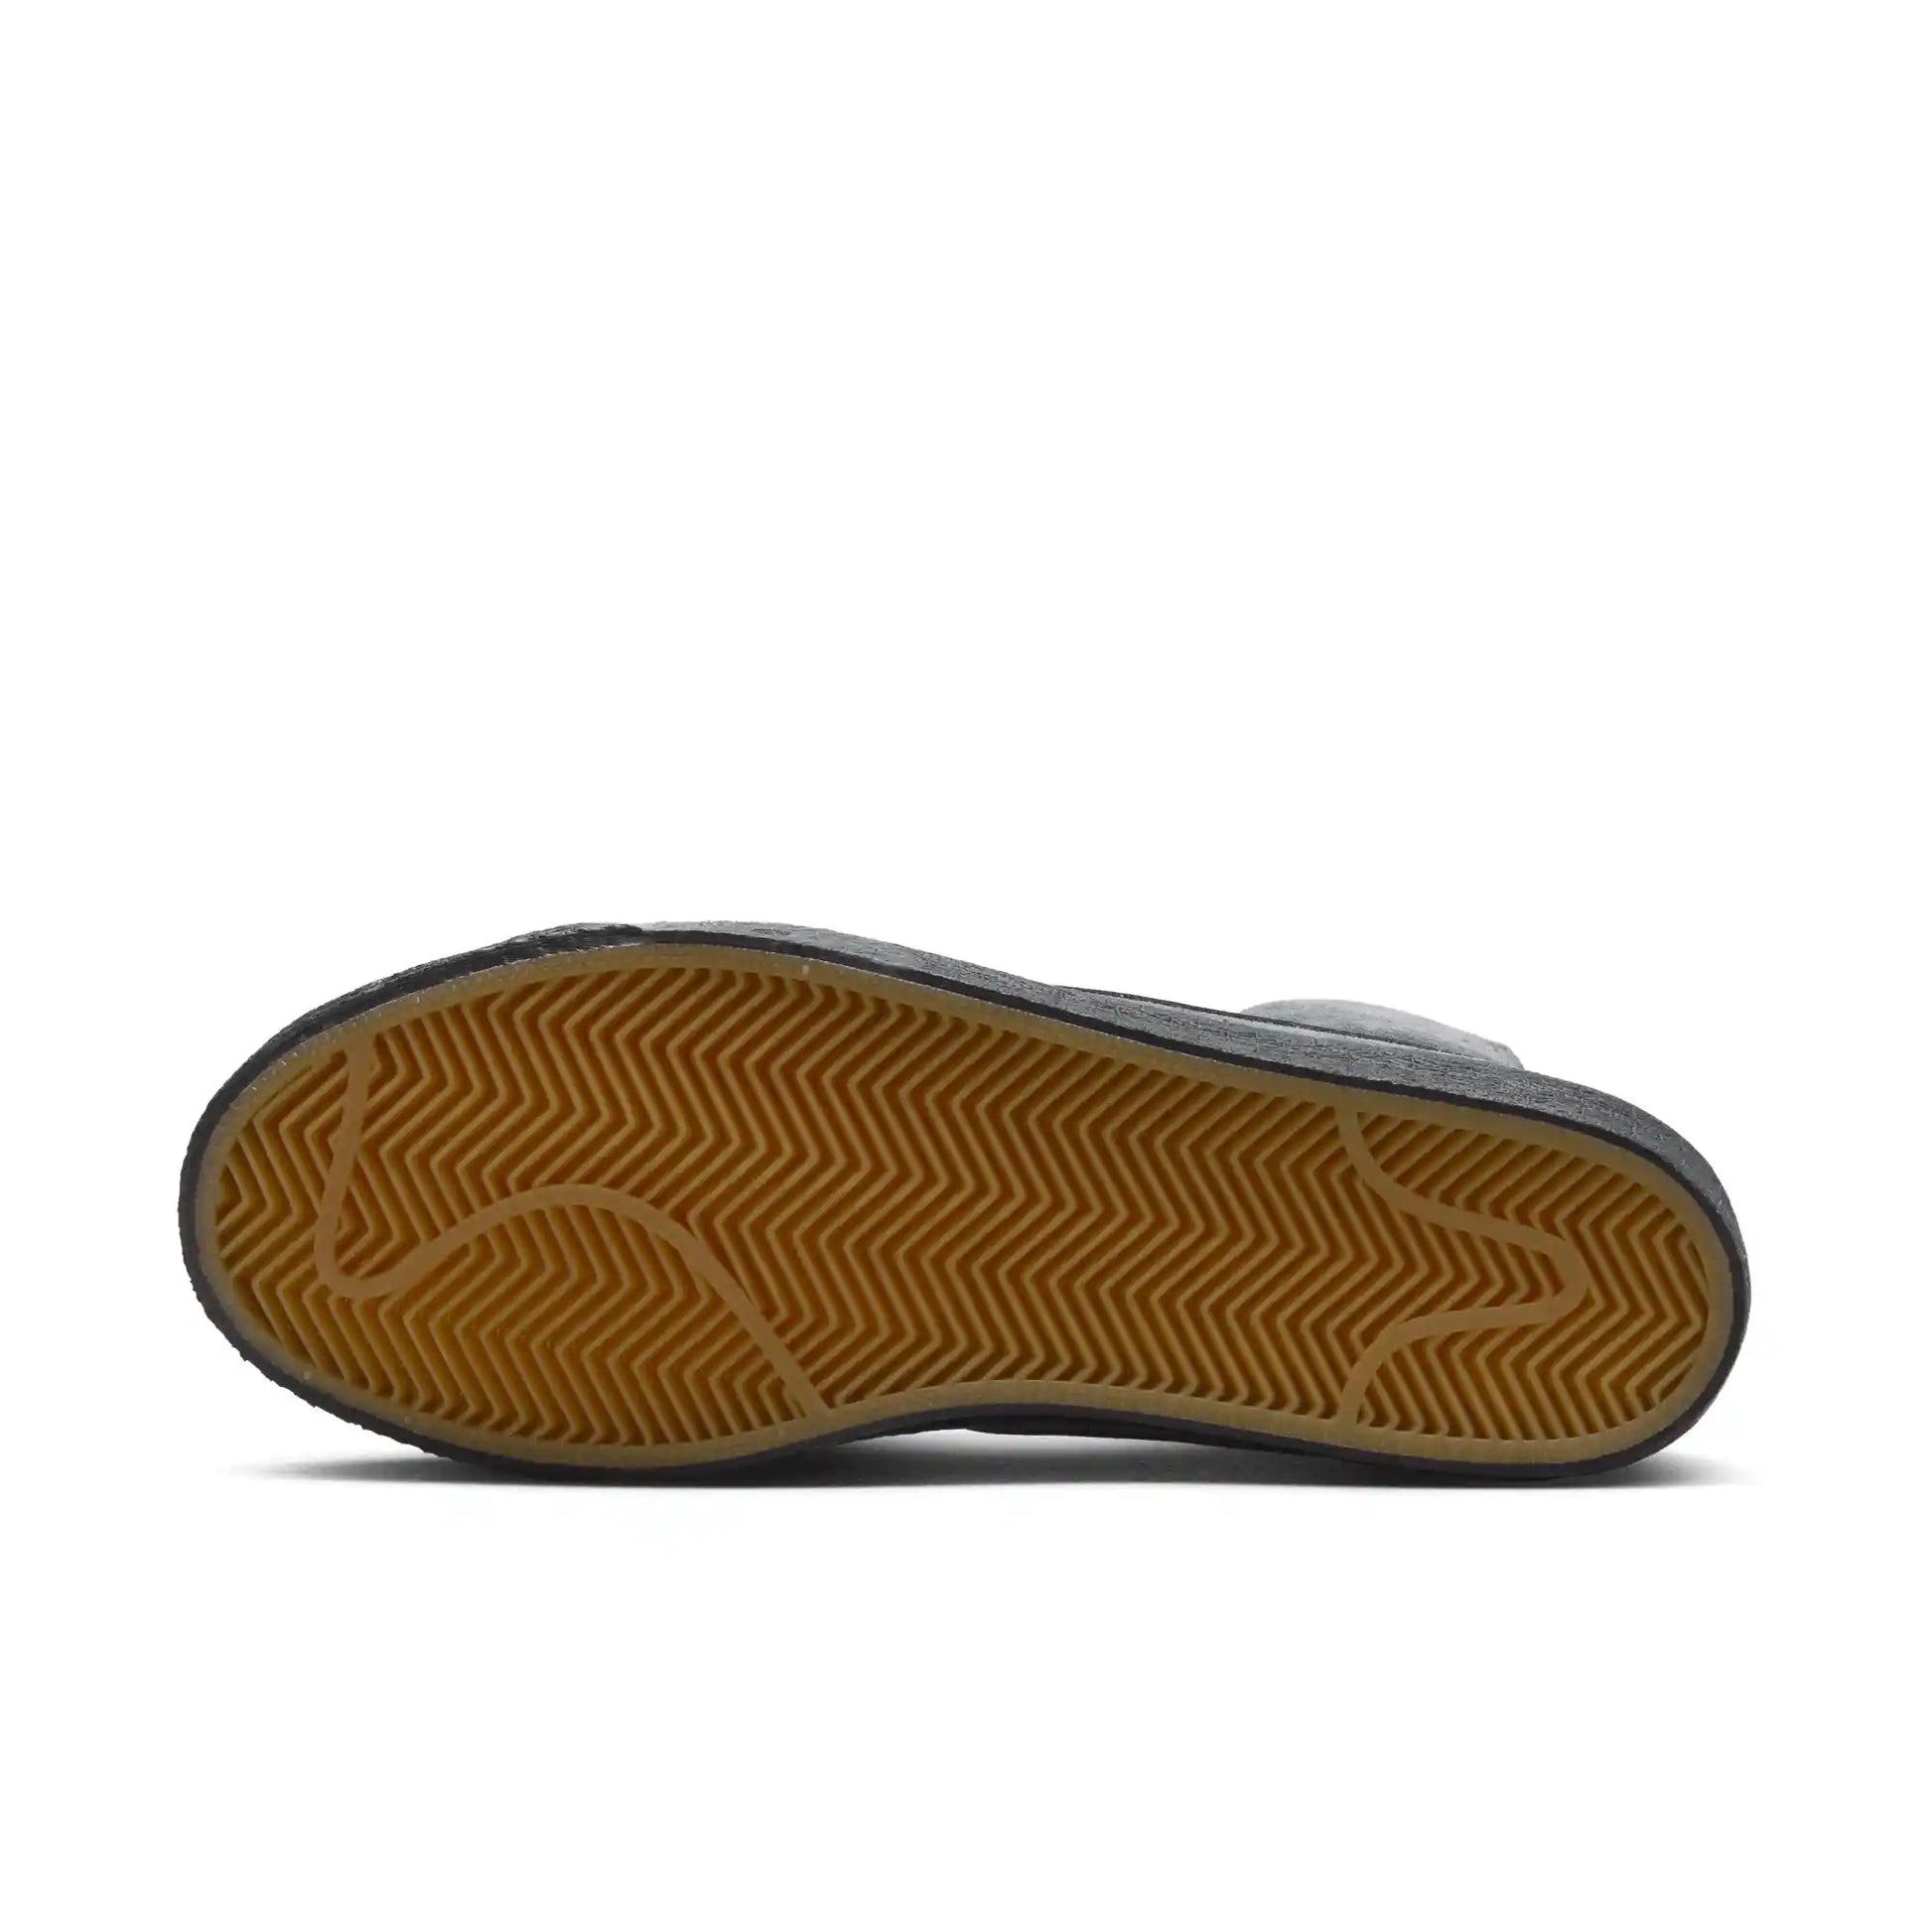 Nike SB Zoom Blazer Mid, anthracite/black-anthracite-black - Tiki Room Skateboards - 3